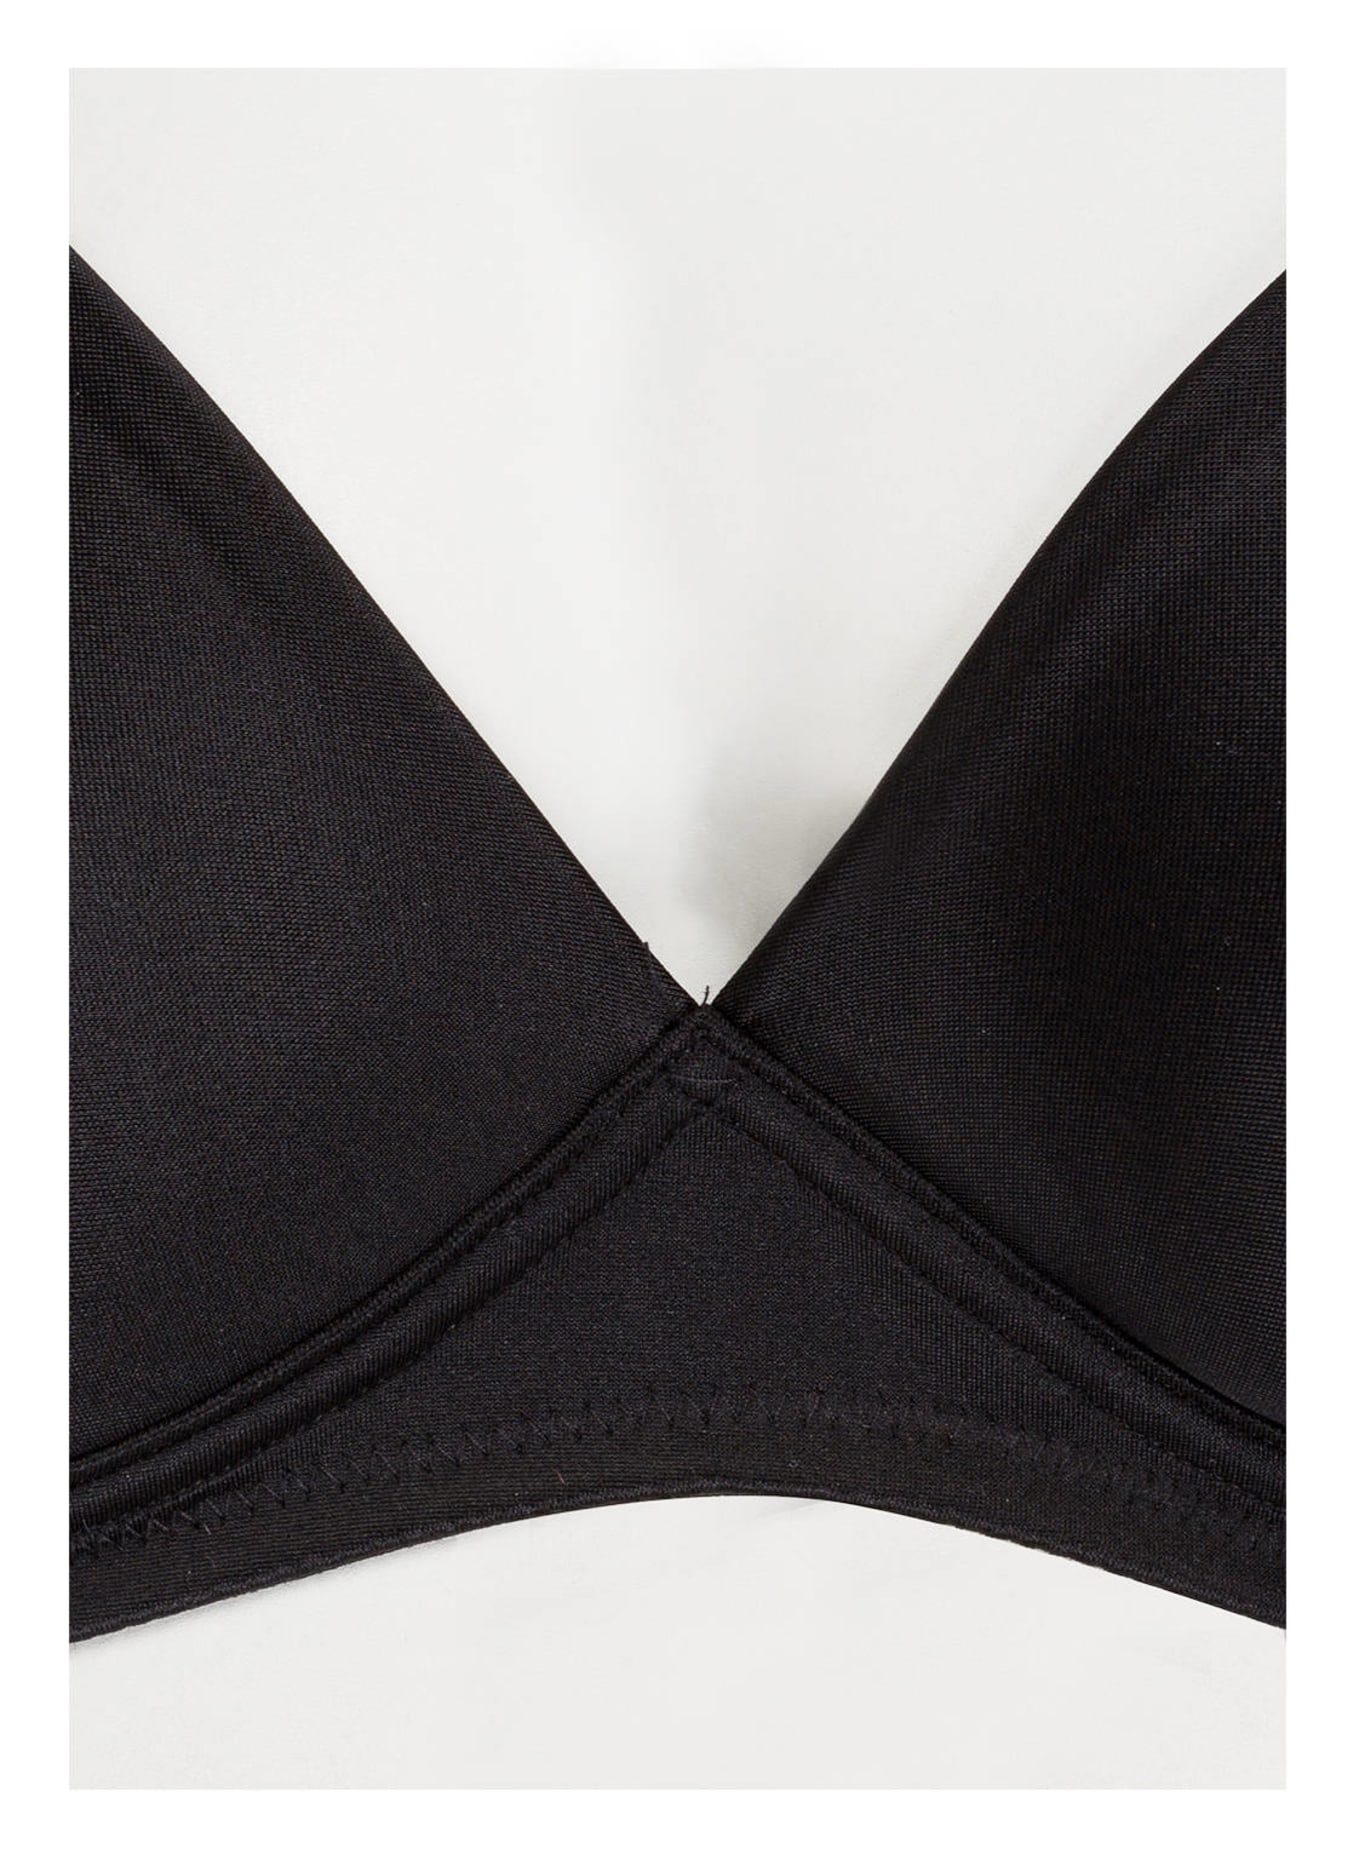 Triumph Molded cup bra SOFT SENSATION, Color: BLACK (Image 3)